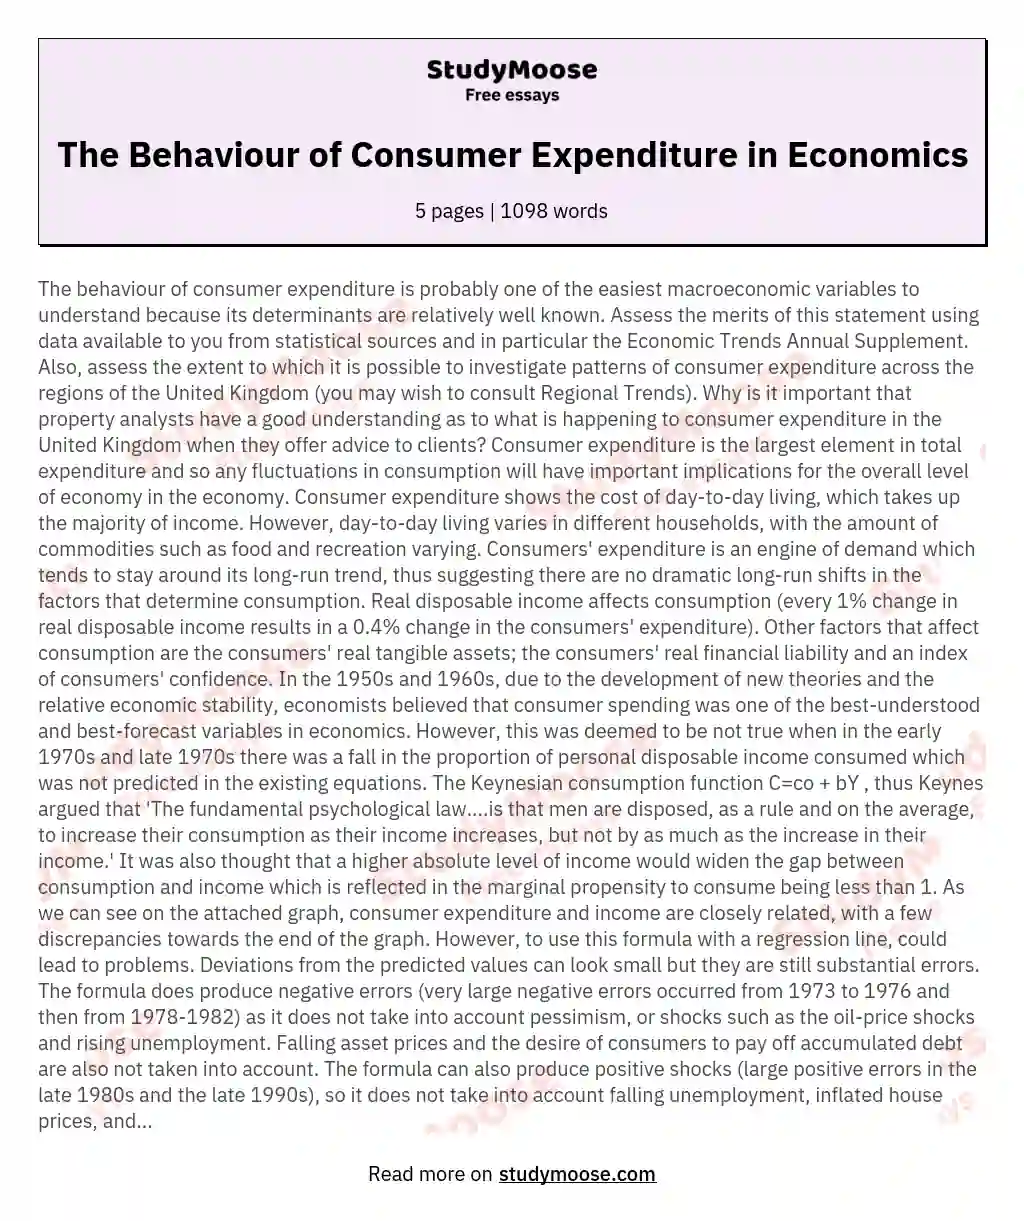 The Behaviour of Consumer Expenditure in Economics